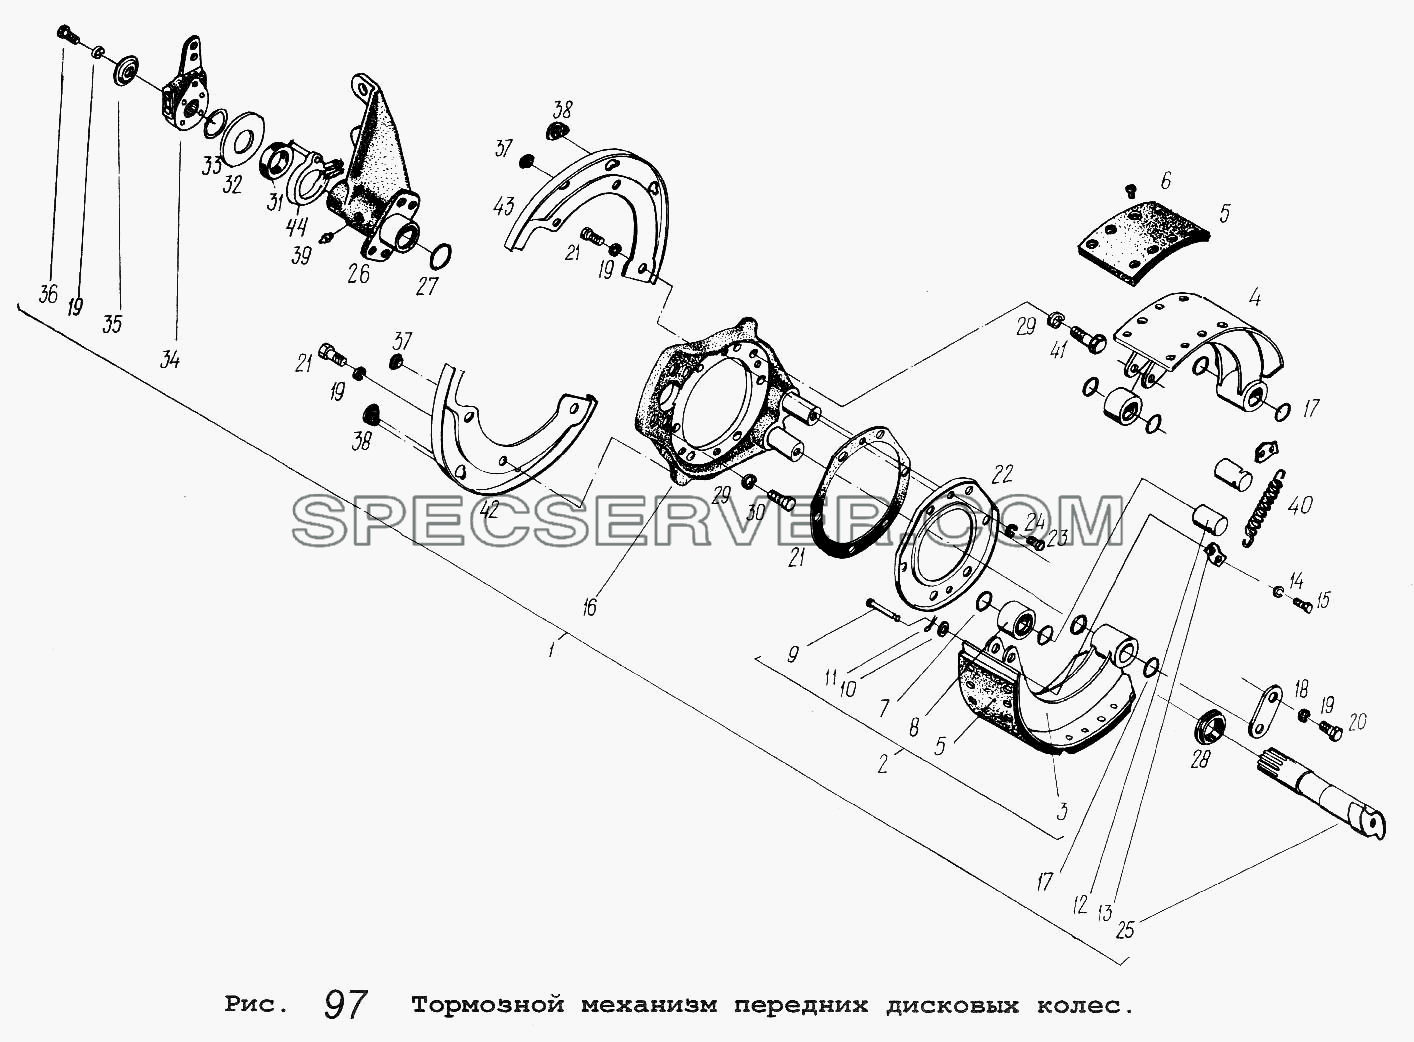 Тормозной механизм передних дисковых колес для МАЗ-64229 (список запасных частей)